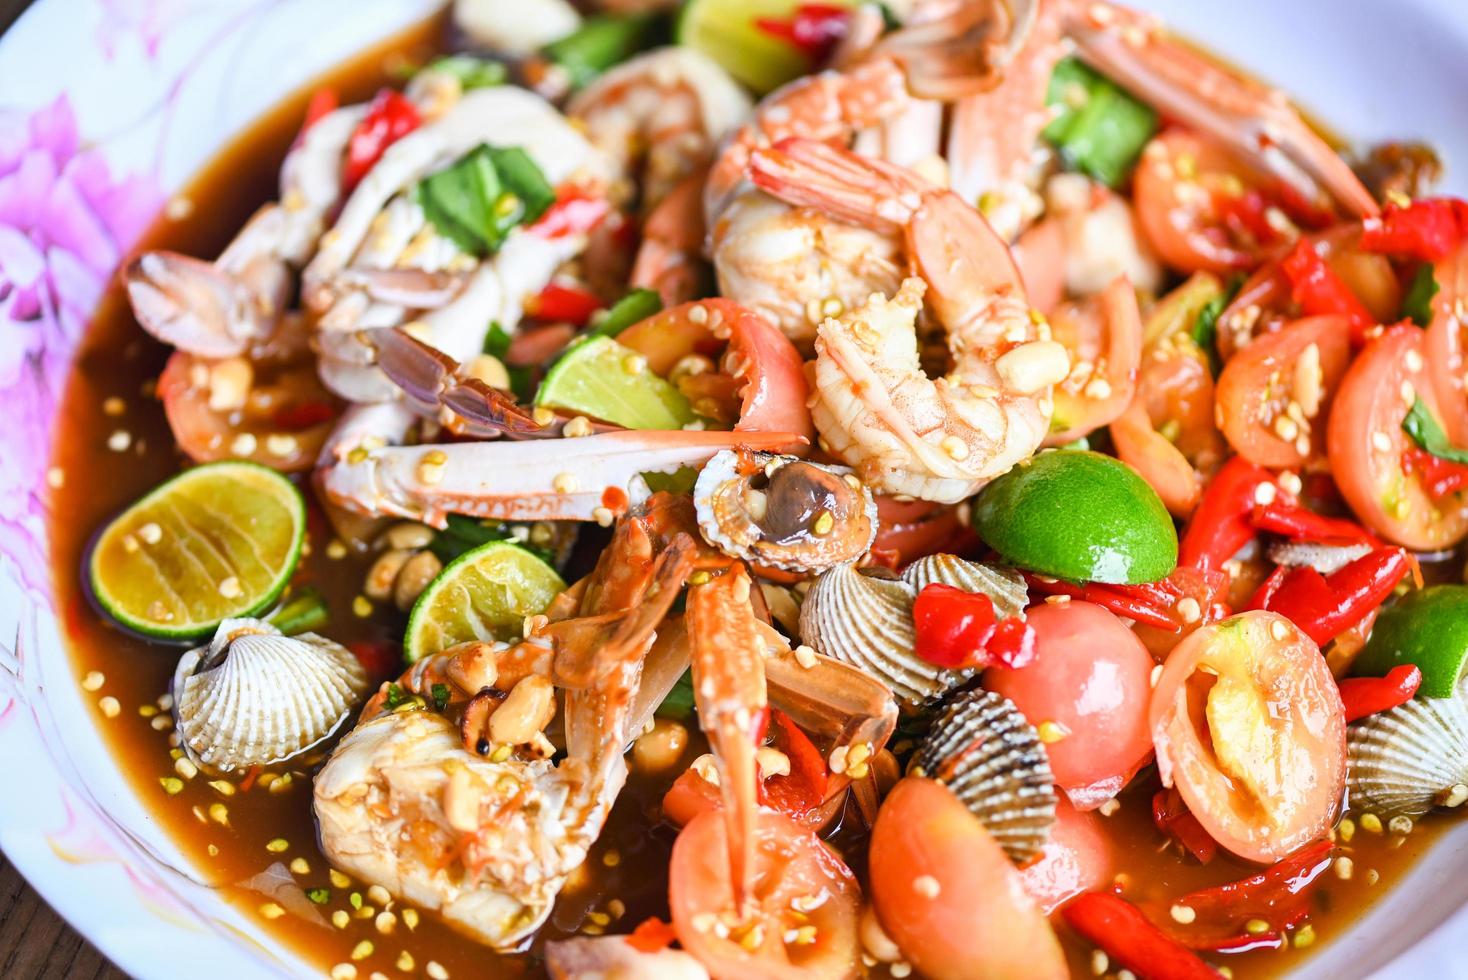 salade épicée fruits de mer sur plateau, salade cuisine thaï épicée délicieux fruits de mer avec crabe crevettes coque calamar et épices ingrédient citron citron vert tomate piment frais nourriture épicée photo